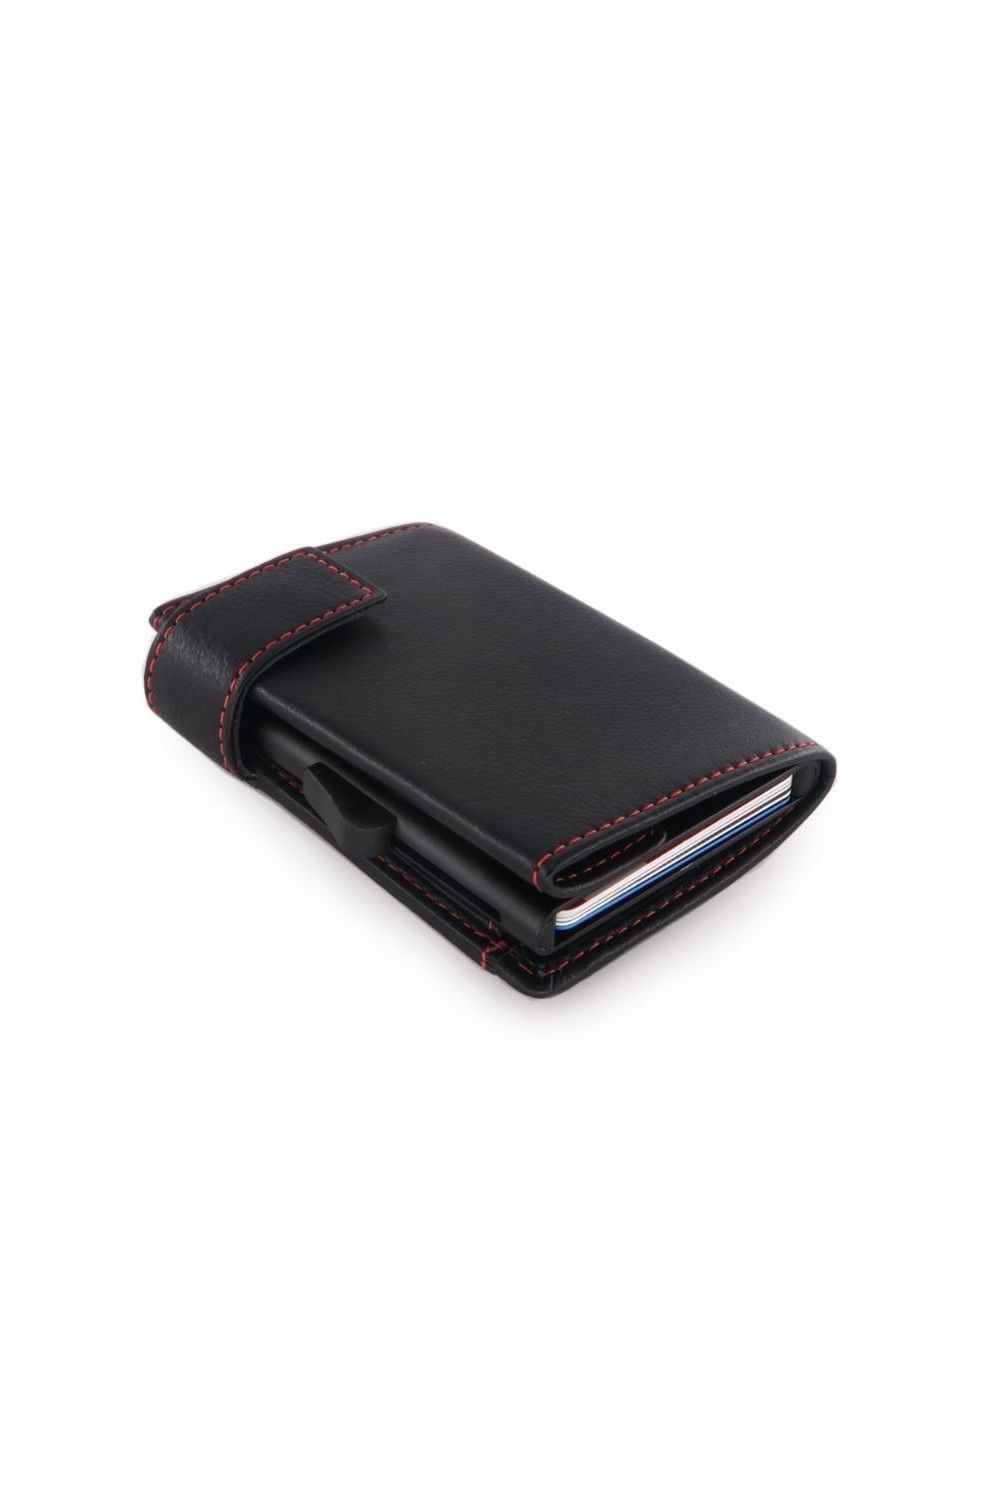 Porte-cartes SecWal DK Leather noir-rouge